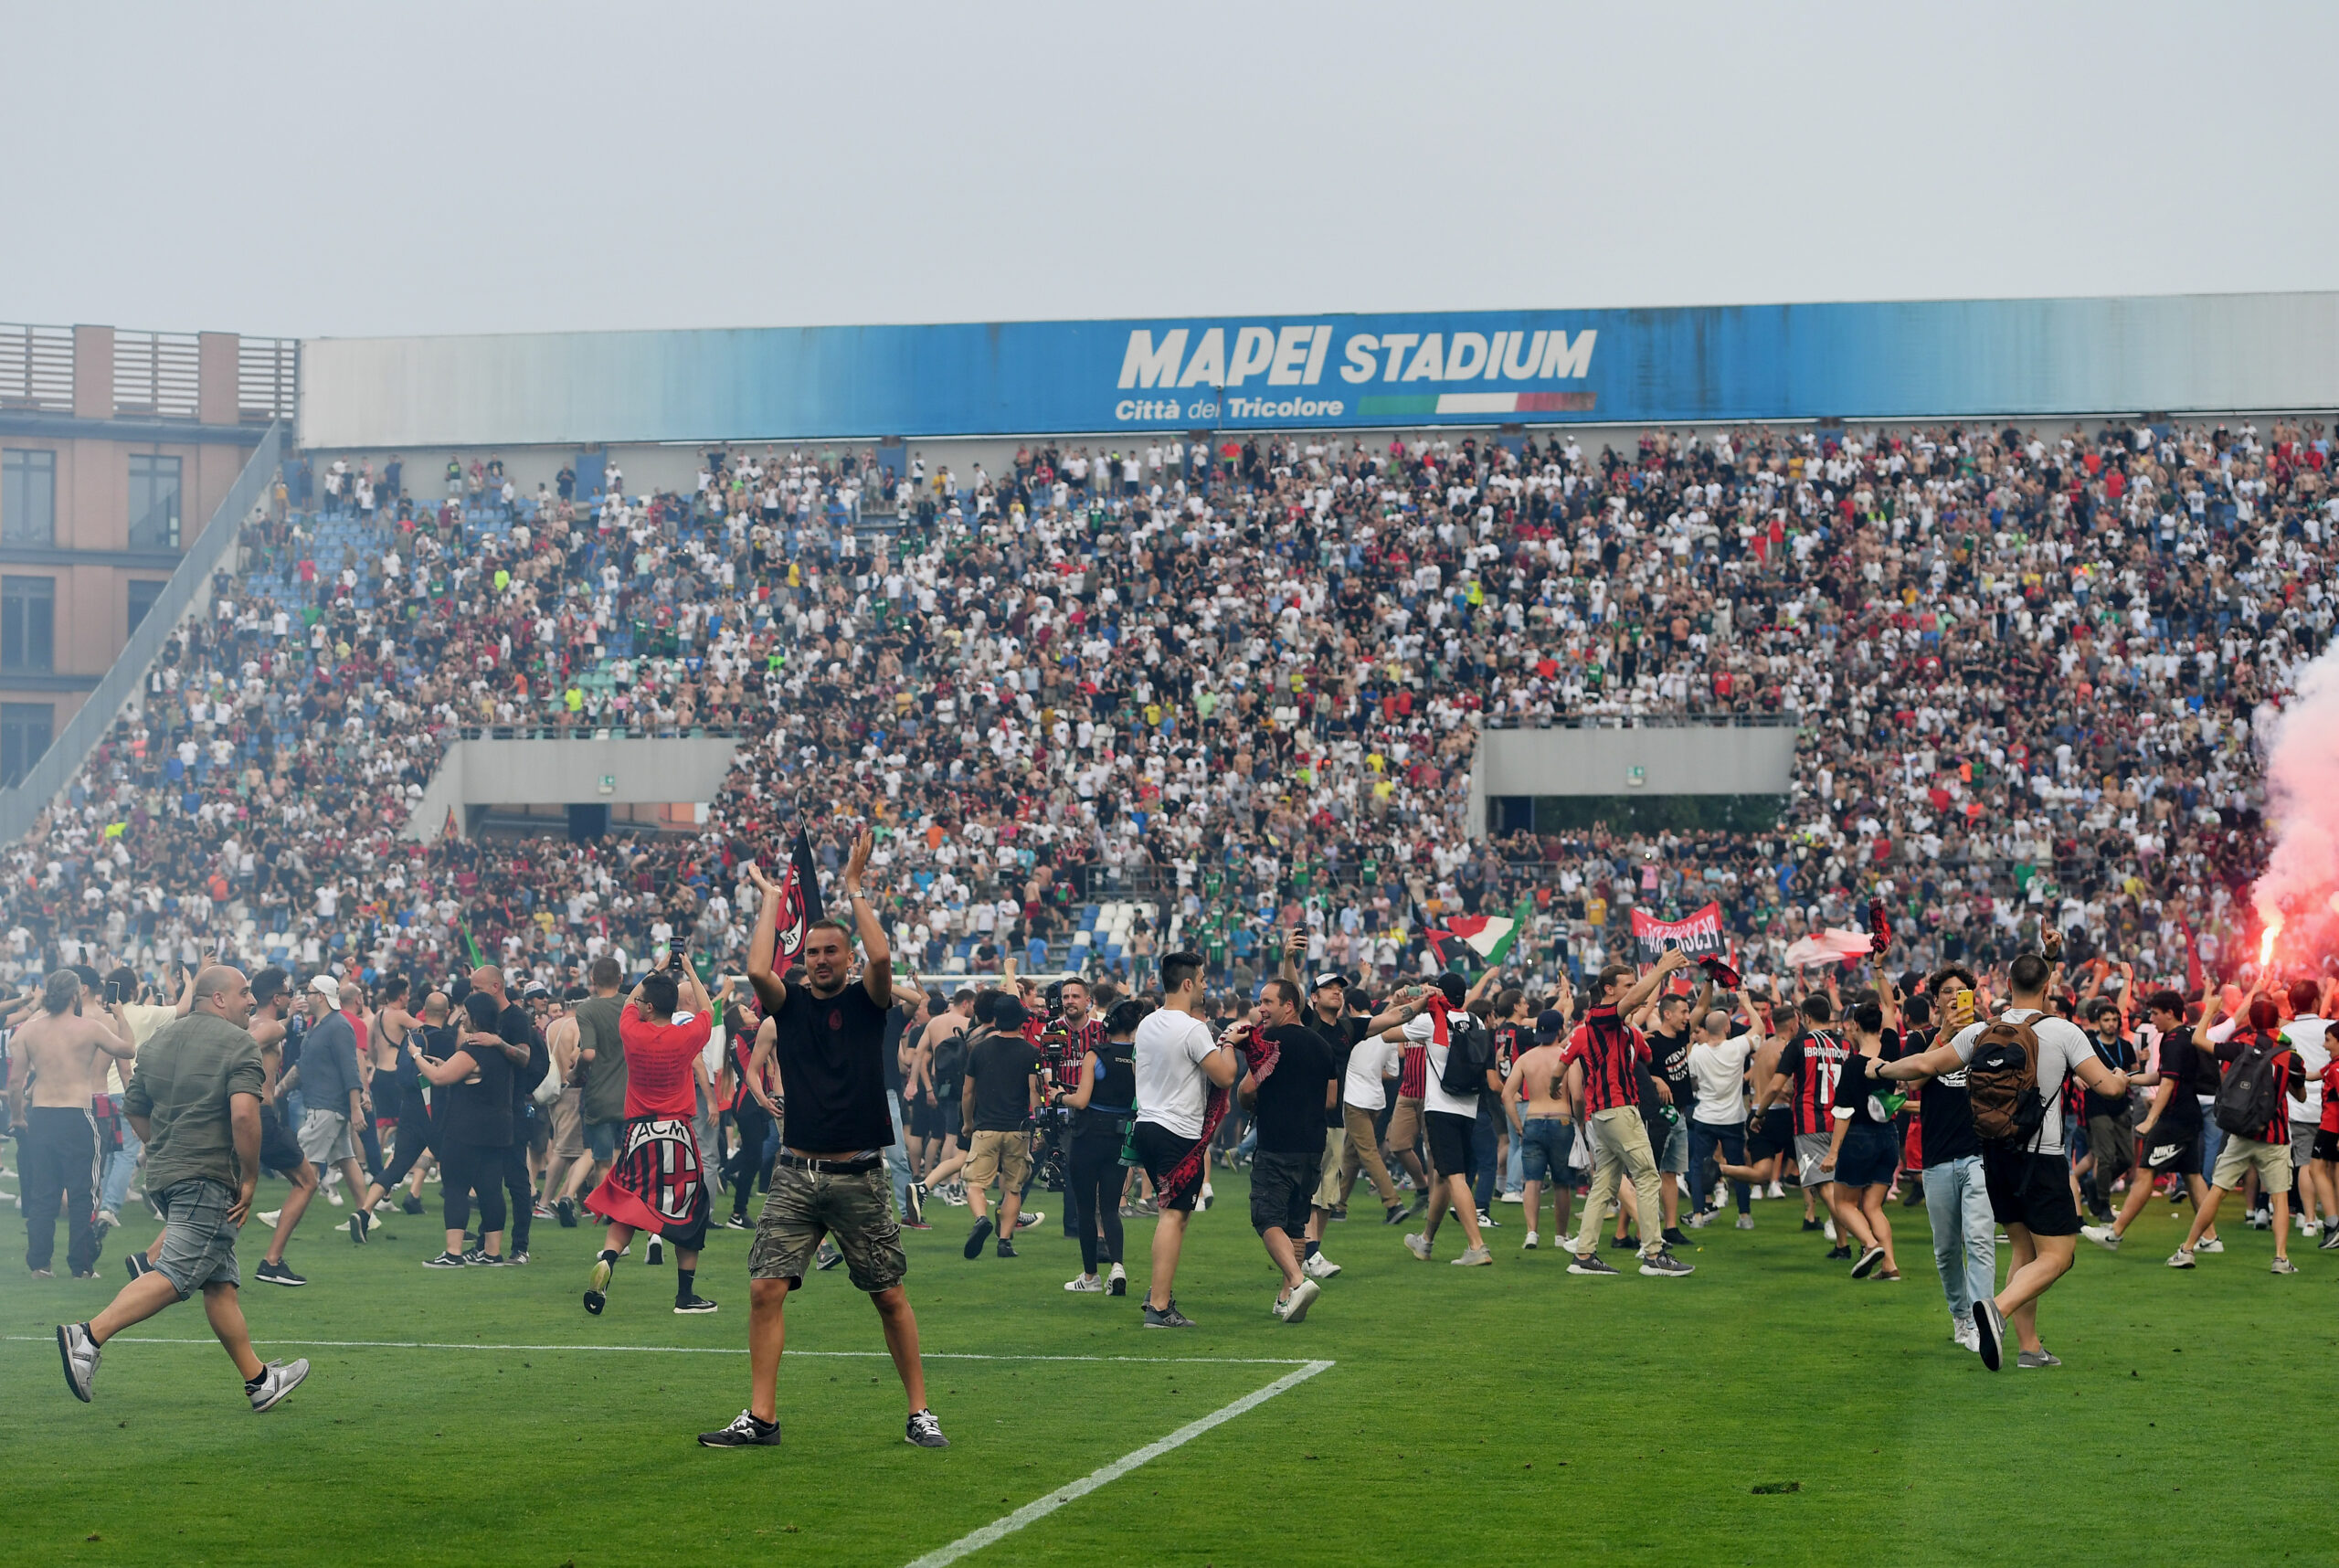 VIDEO – I tifosi del Milan rovinano la festa, immagini di violenza inaudita dal Mapei